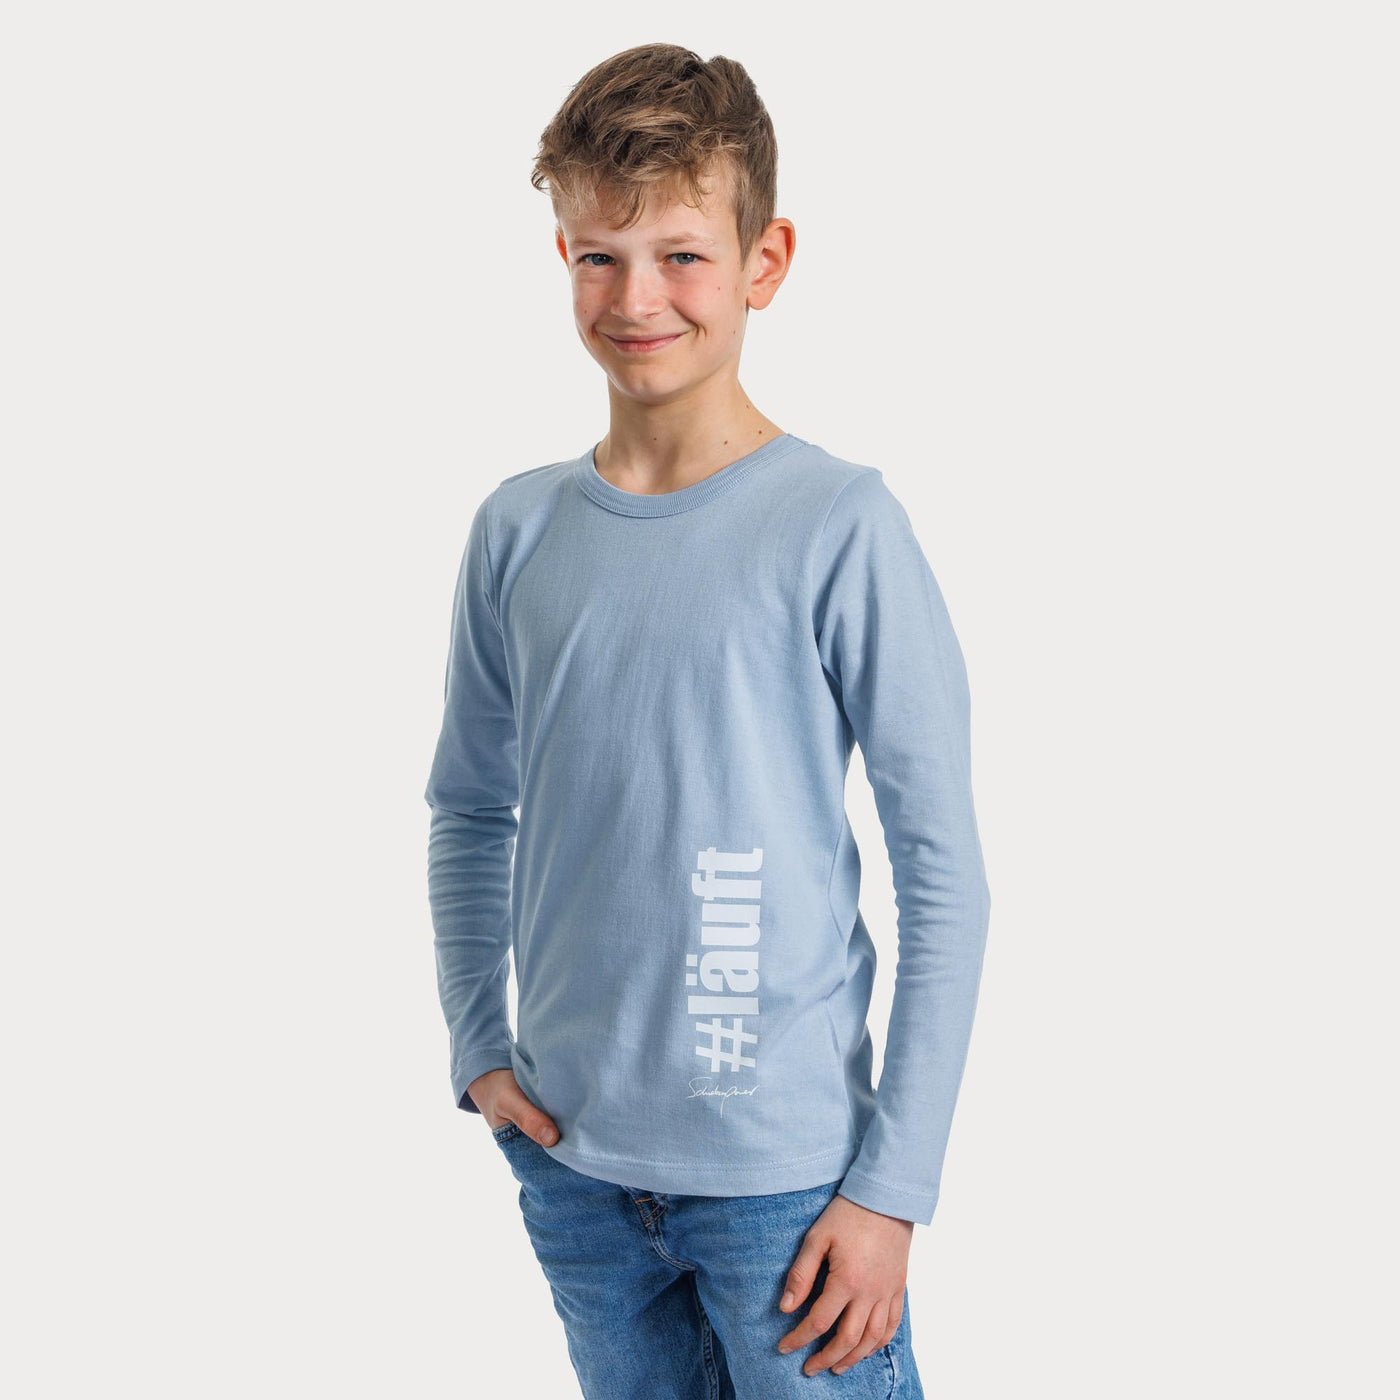 Kinder Langarm-Shirt "Läuft"